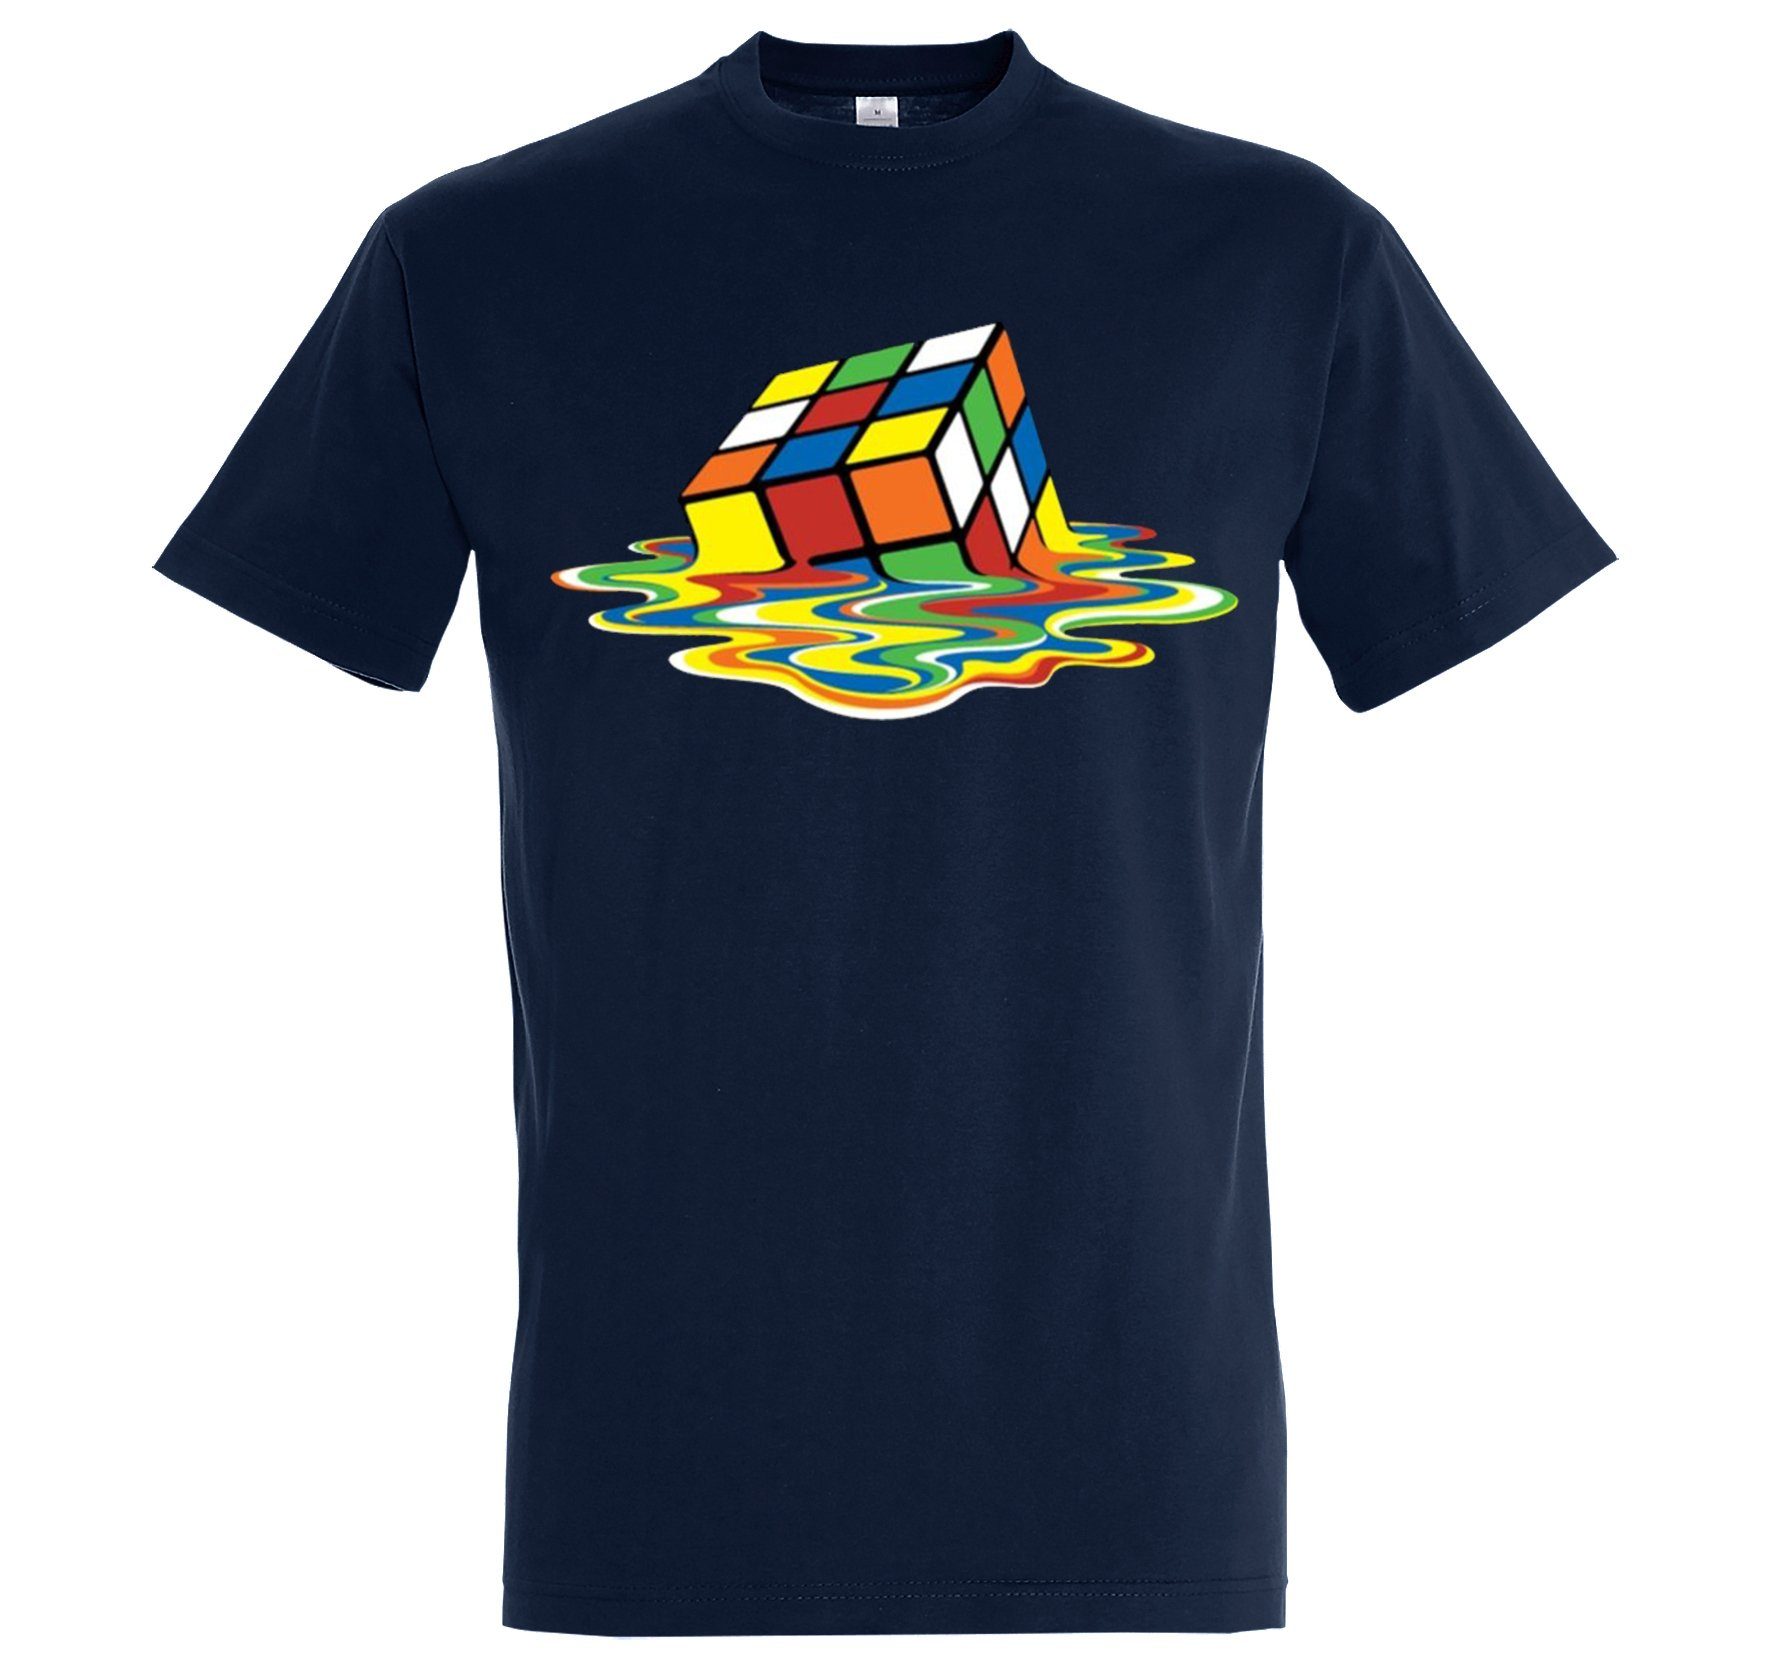 Youth Designz T-Shirt Zauberwürfel Herren Shirt mit witzigem Frontprint Navyblau